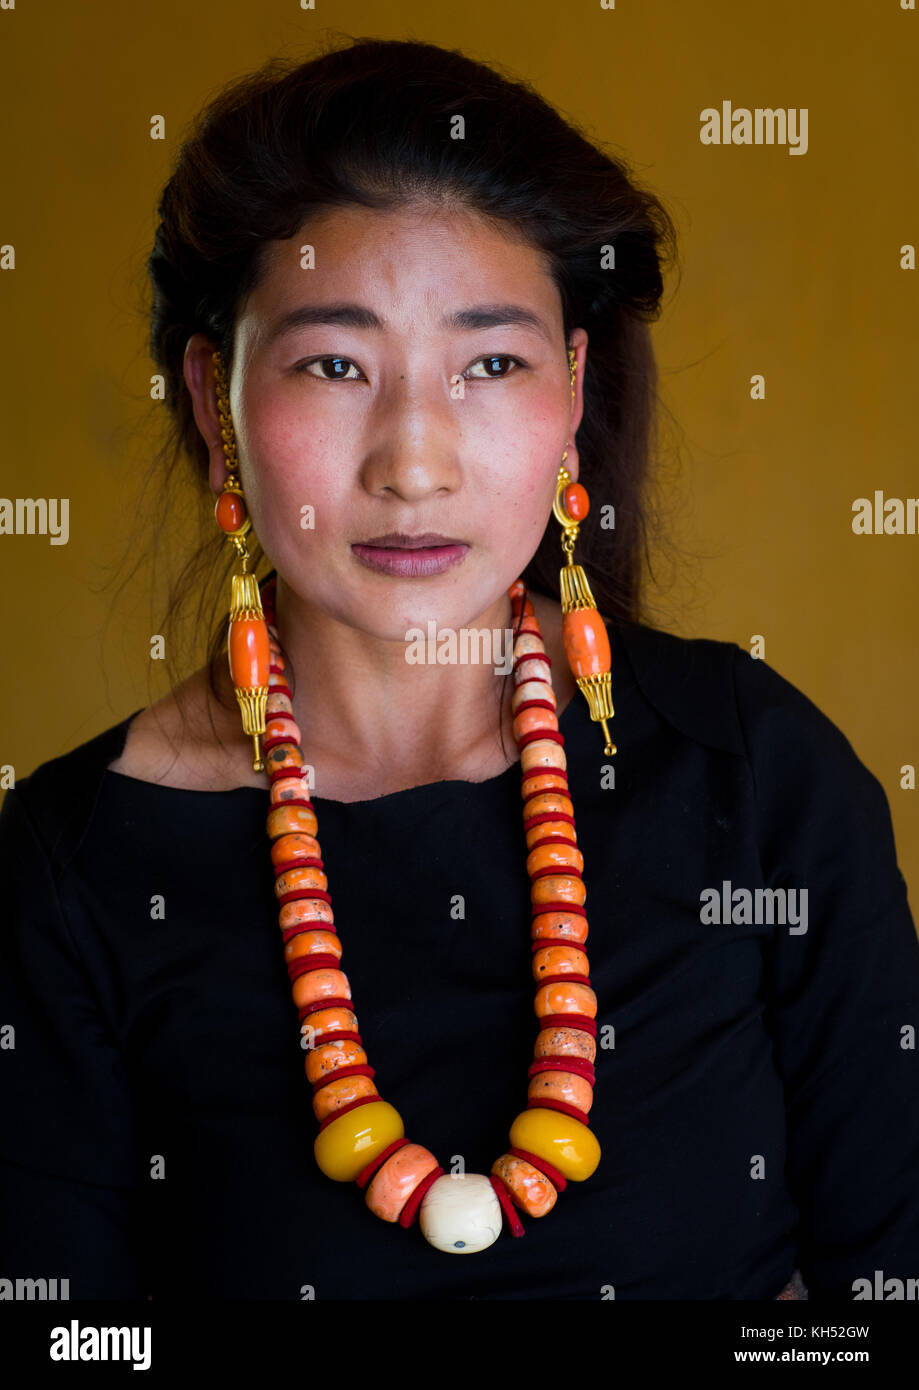 Porträt einer tibetischen Frau mit einem riesigen Halskette, Provinz Qinghai, Tsekhog, China Stockfoto